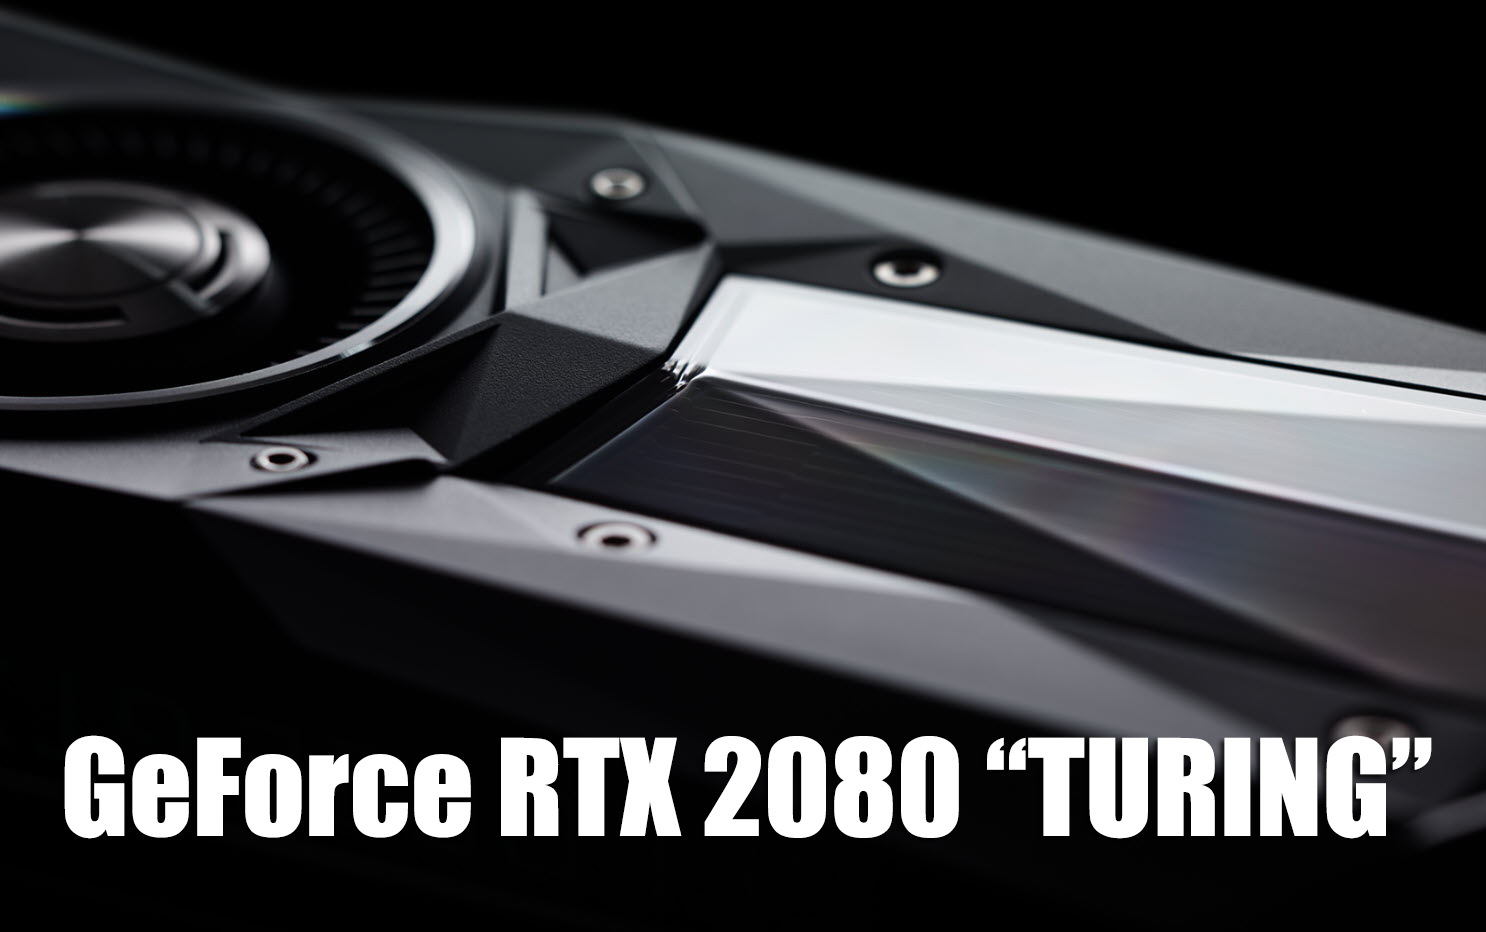 rtx 2080 turing NVIDIA อาจจะลงทะเบียนใช้ชื่อเรียกรุ่นการ์ดจอใหม่ทั้งชื่อ TURING ส่วนรุ่น GeForce GTX เปลี่ยนเป็น GeForce RTX และ Quadro RTX 